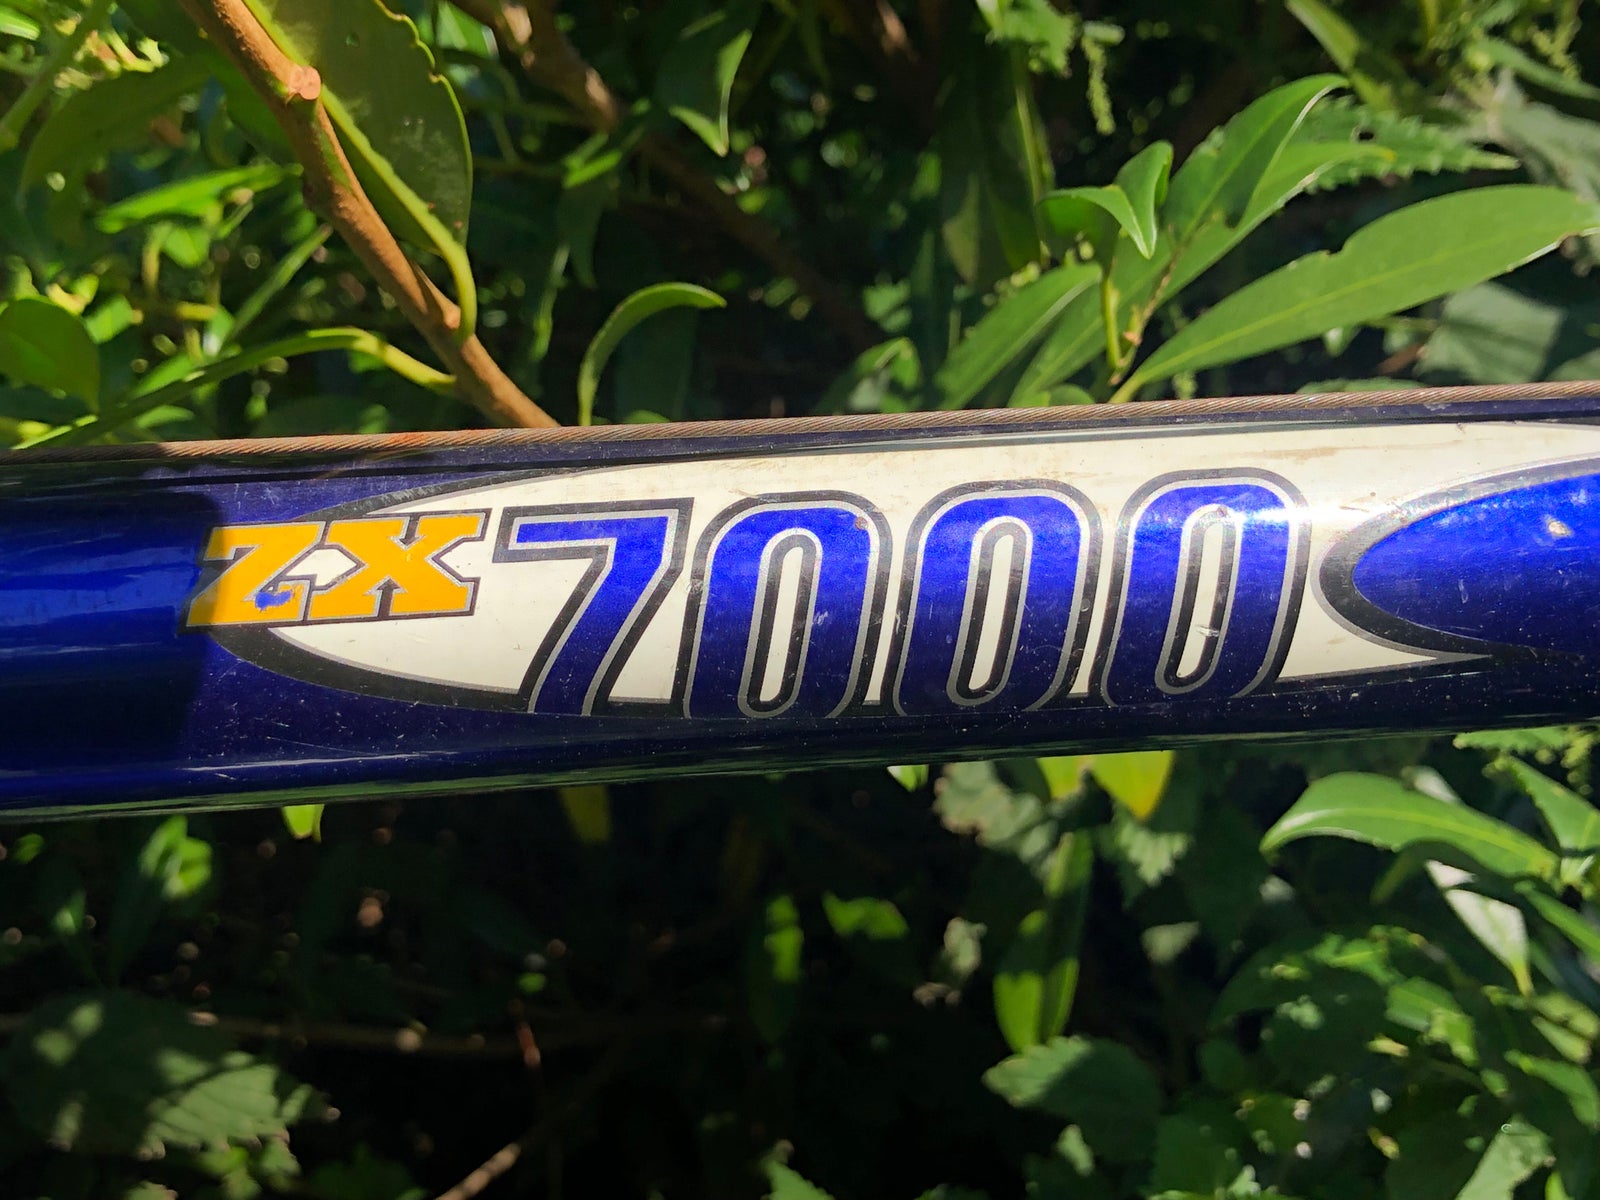 Trek Zx7000, hardtail, 24 gear